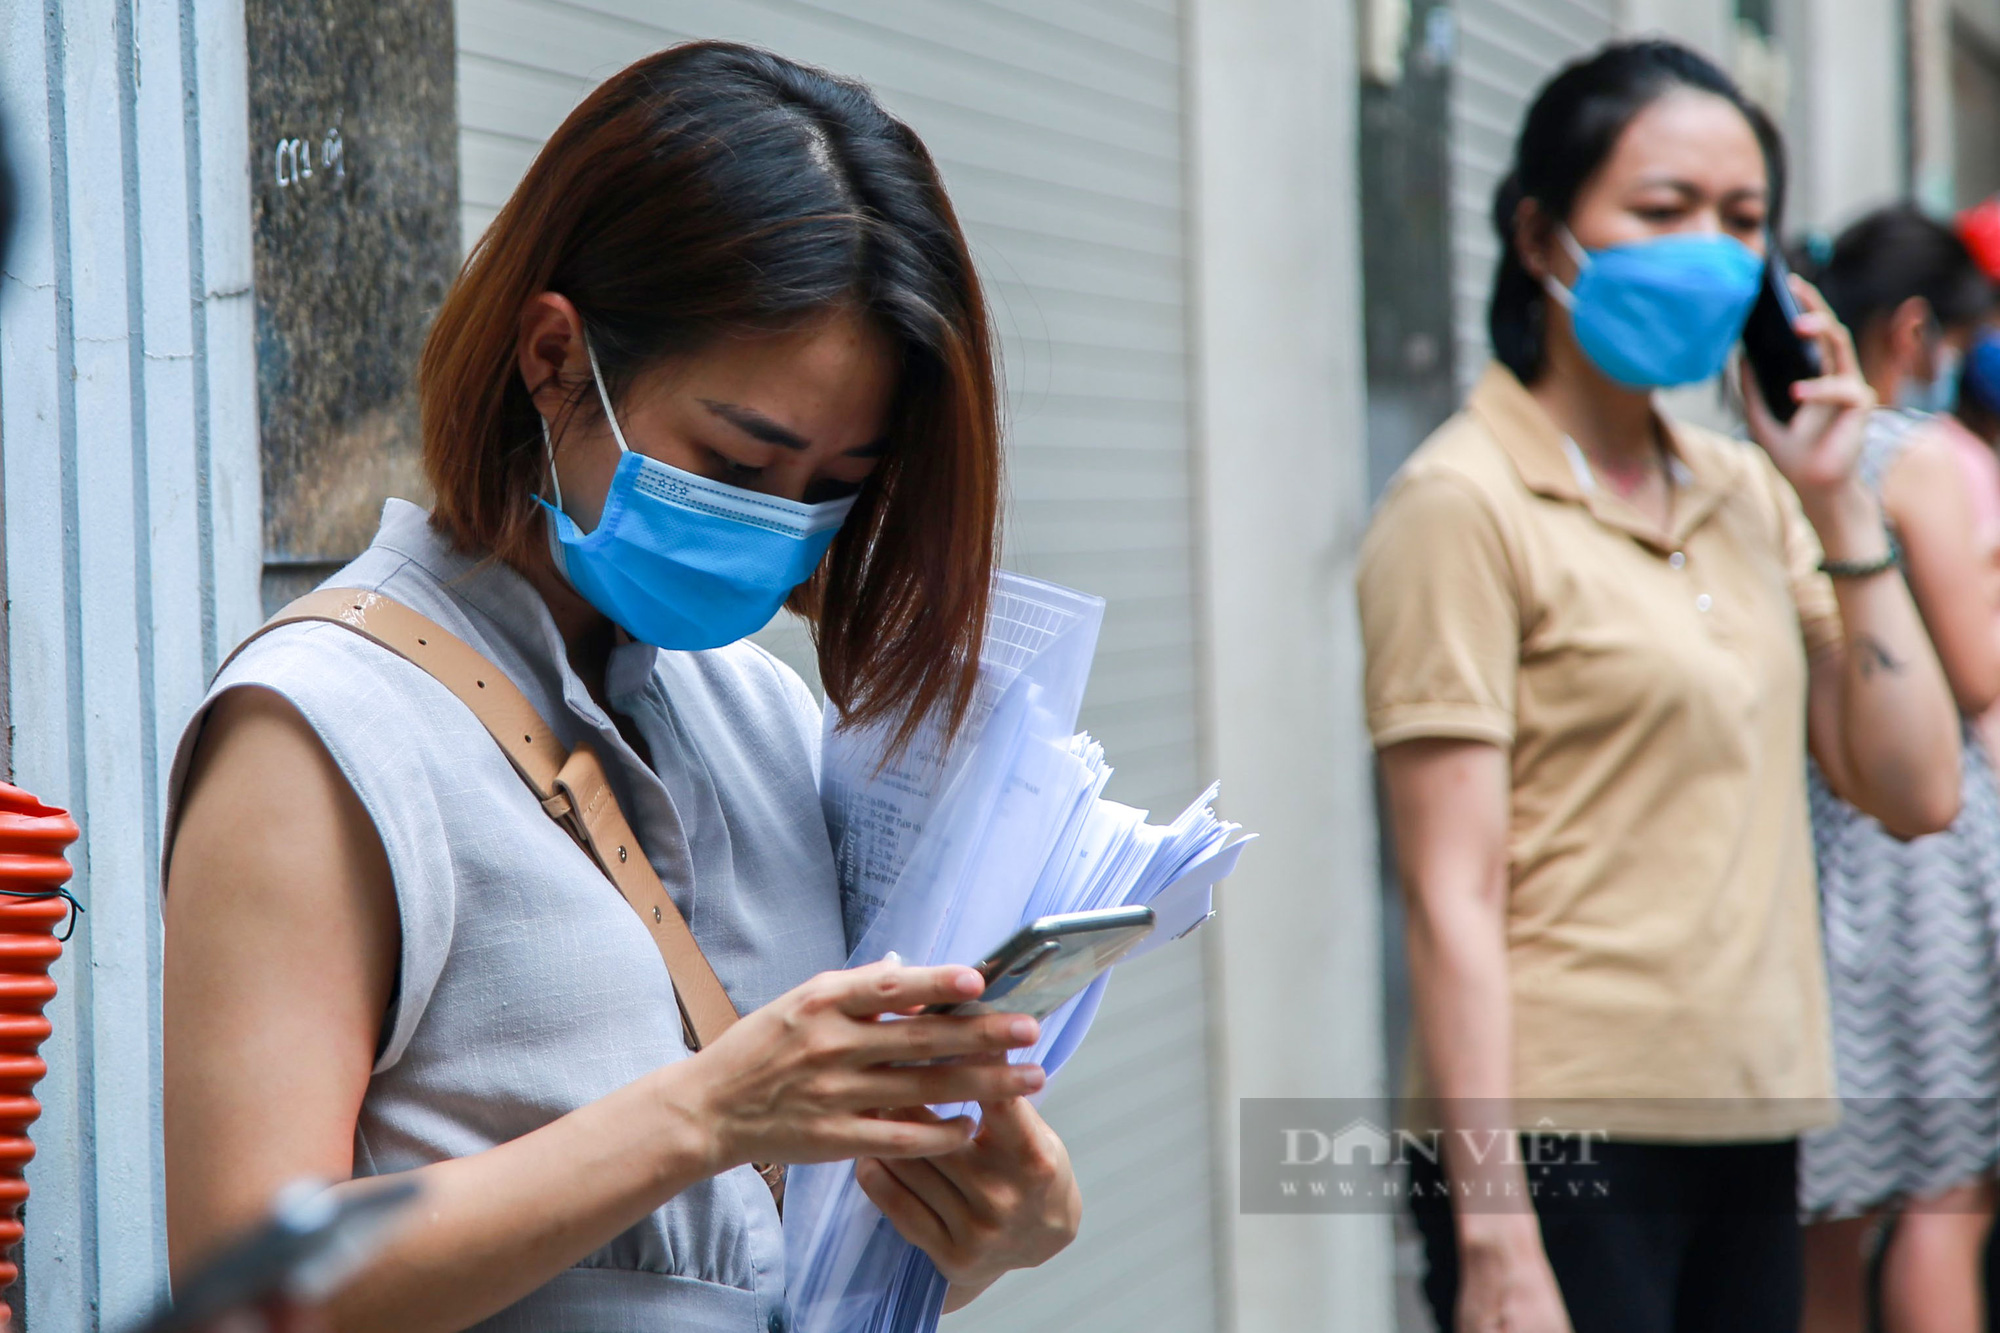 Hà Nội: Người dân xếp hàng xin xác nhận giấy đi đường trong thời gian giãn cách  - Ảnh 6.